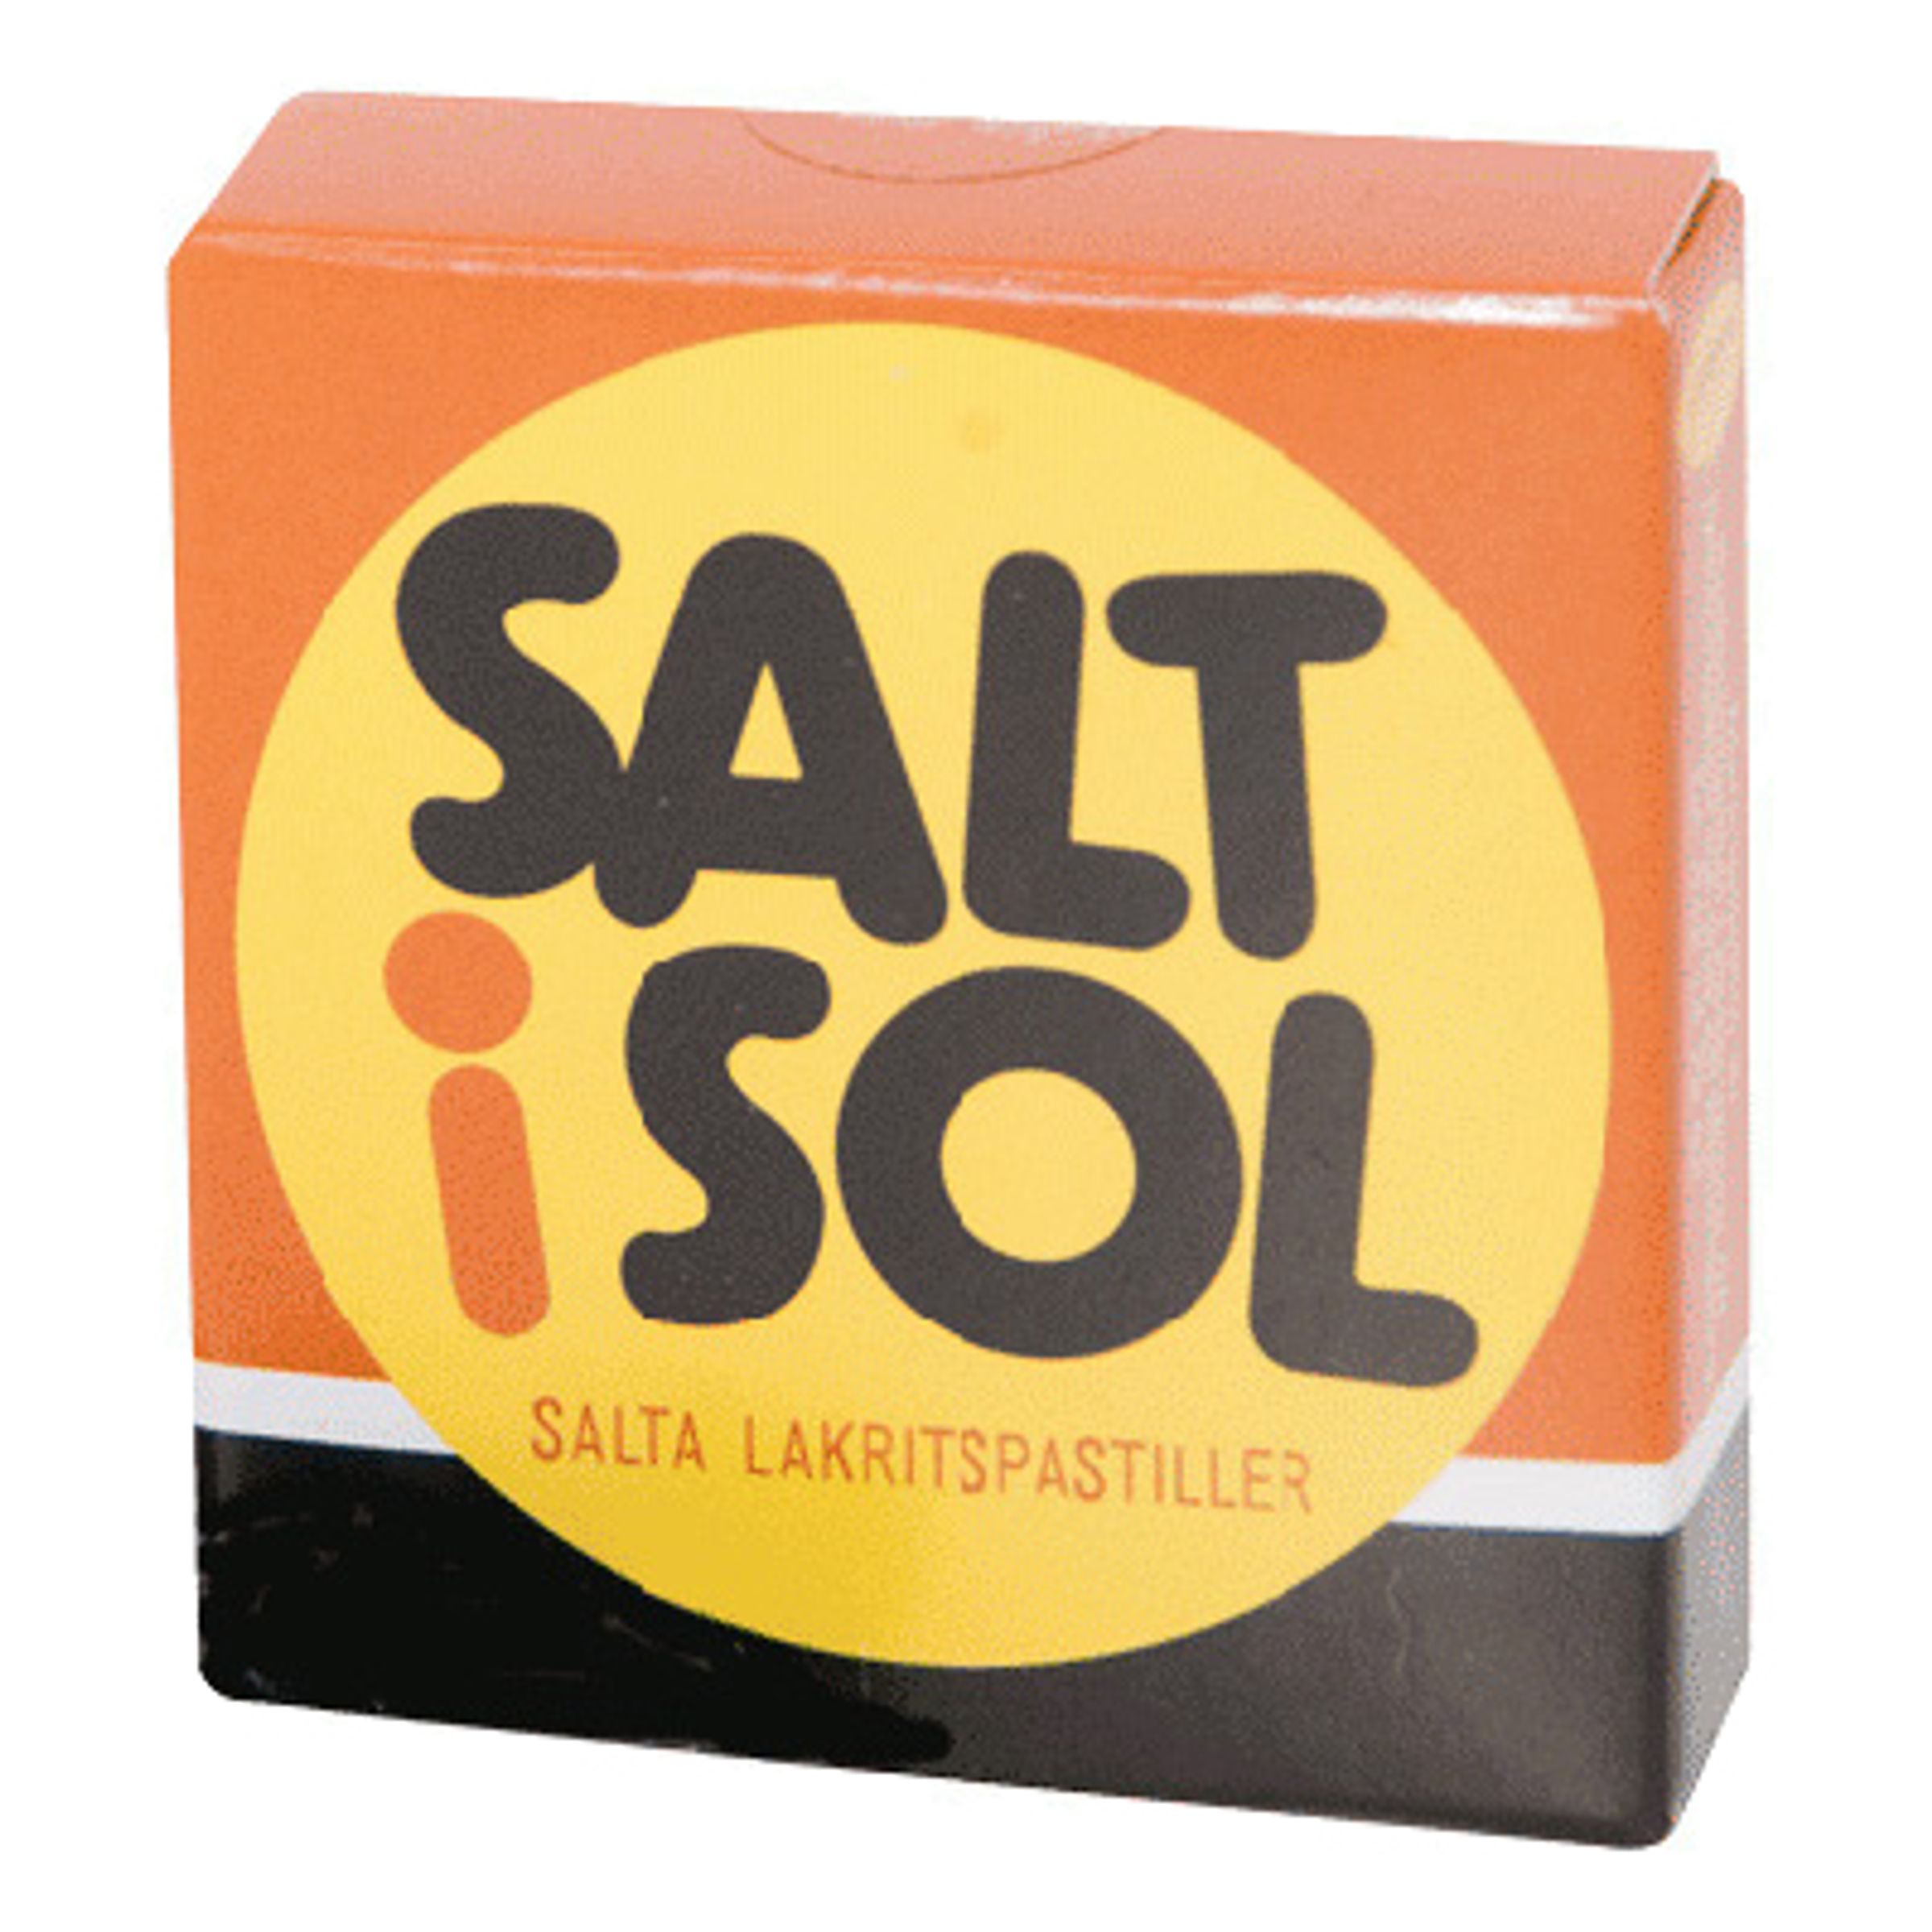 Salt i Sol Tablettask - 1-pack